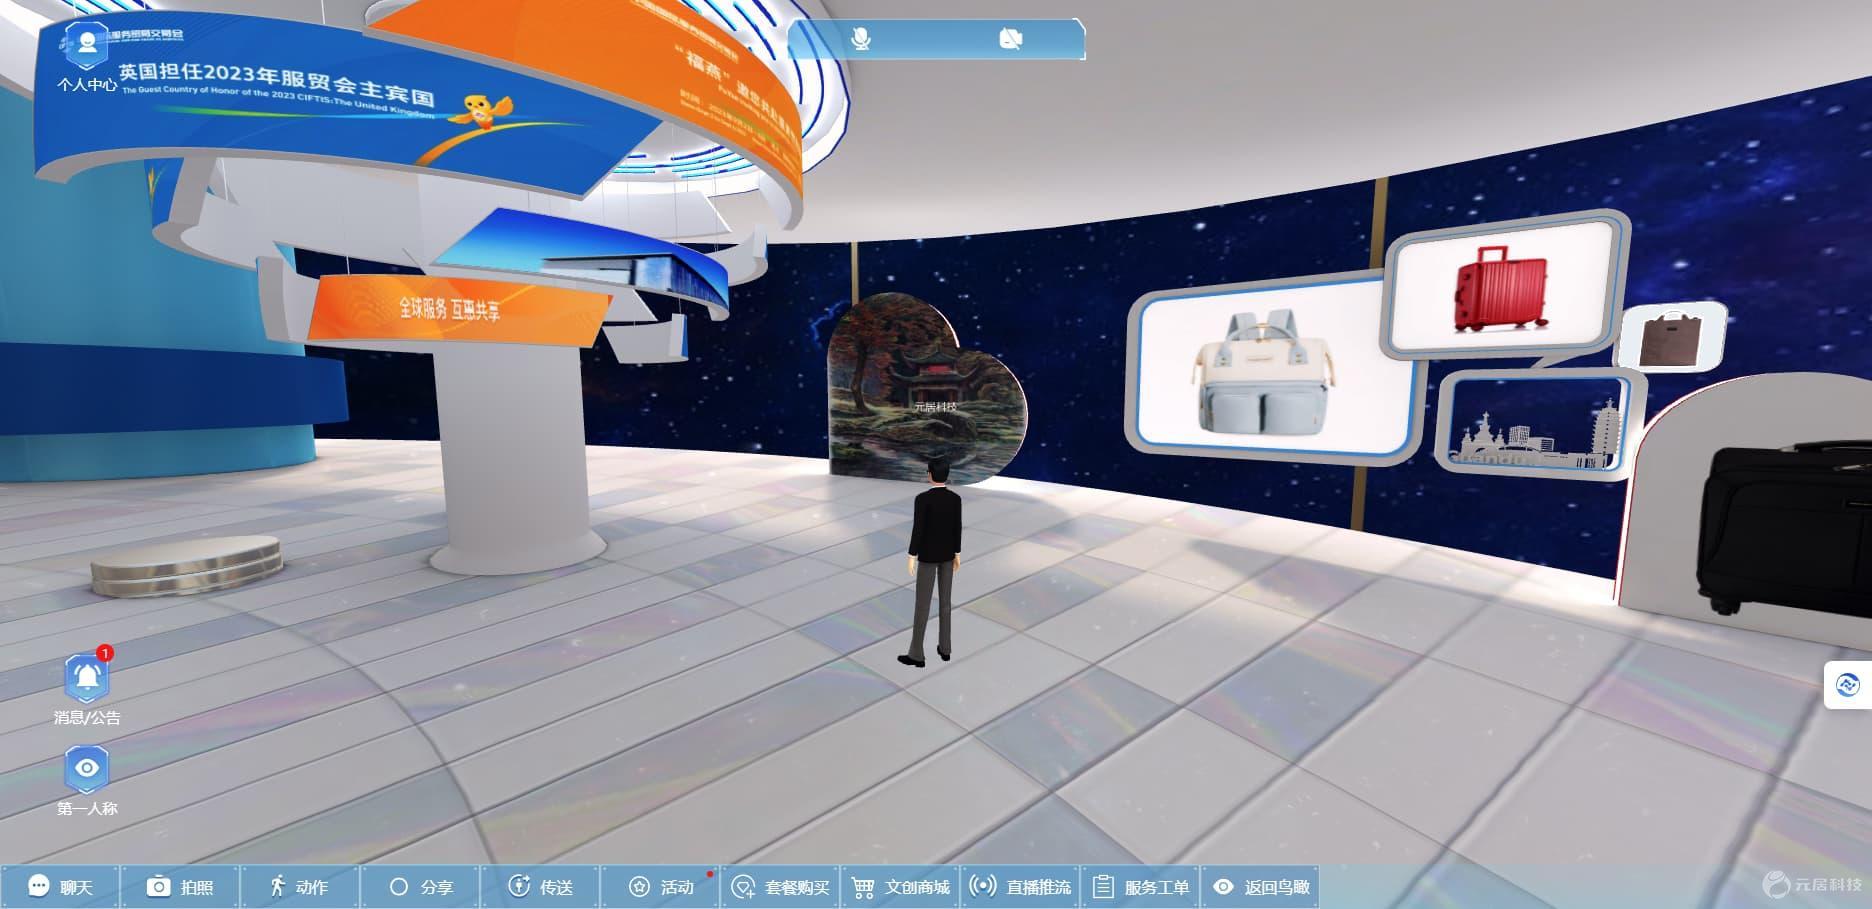 VR在线展厅